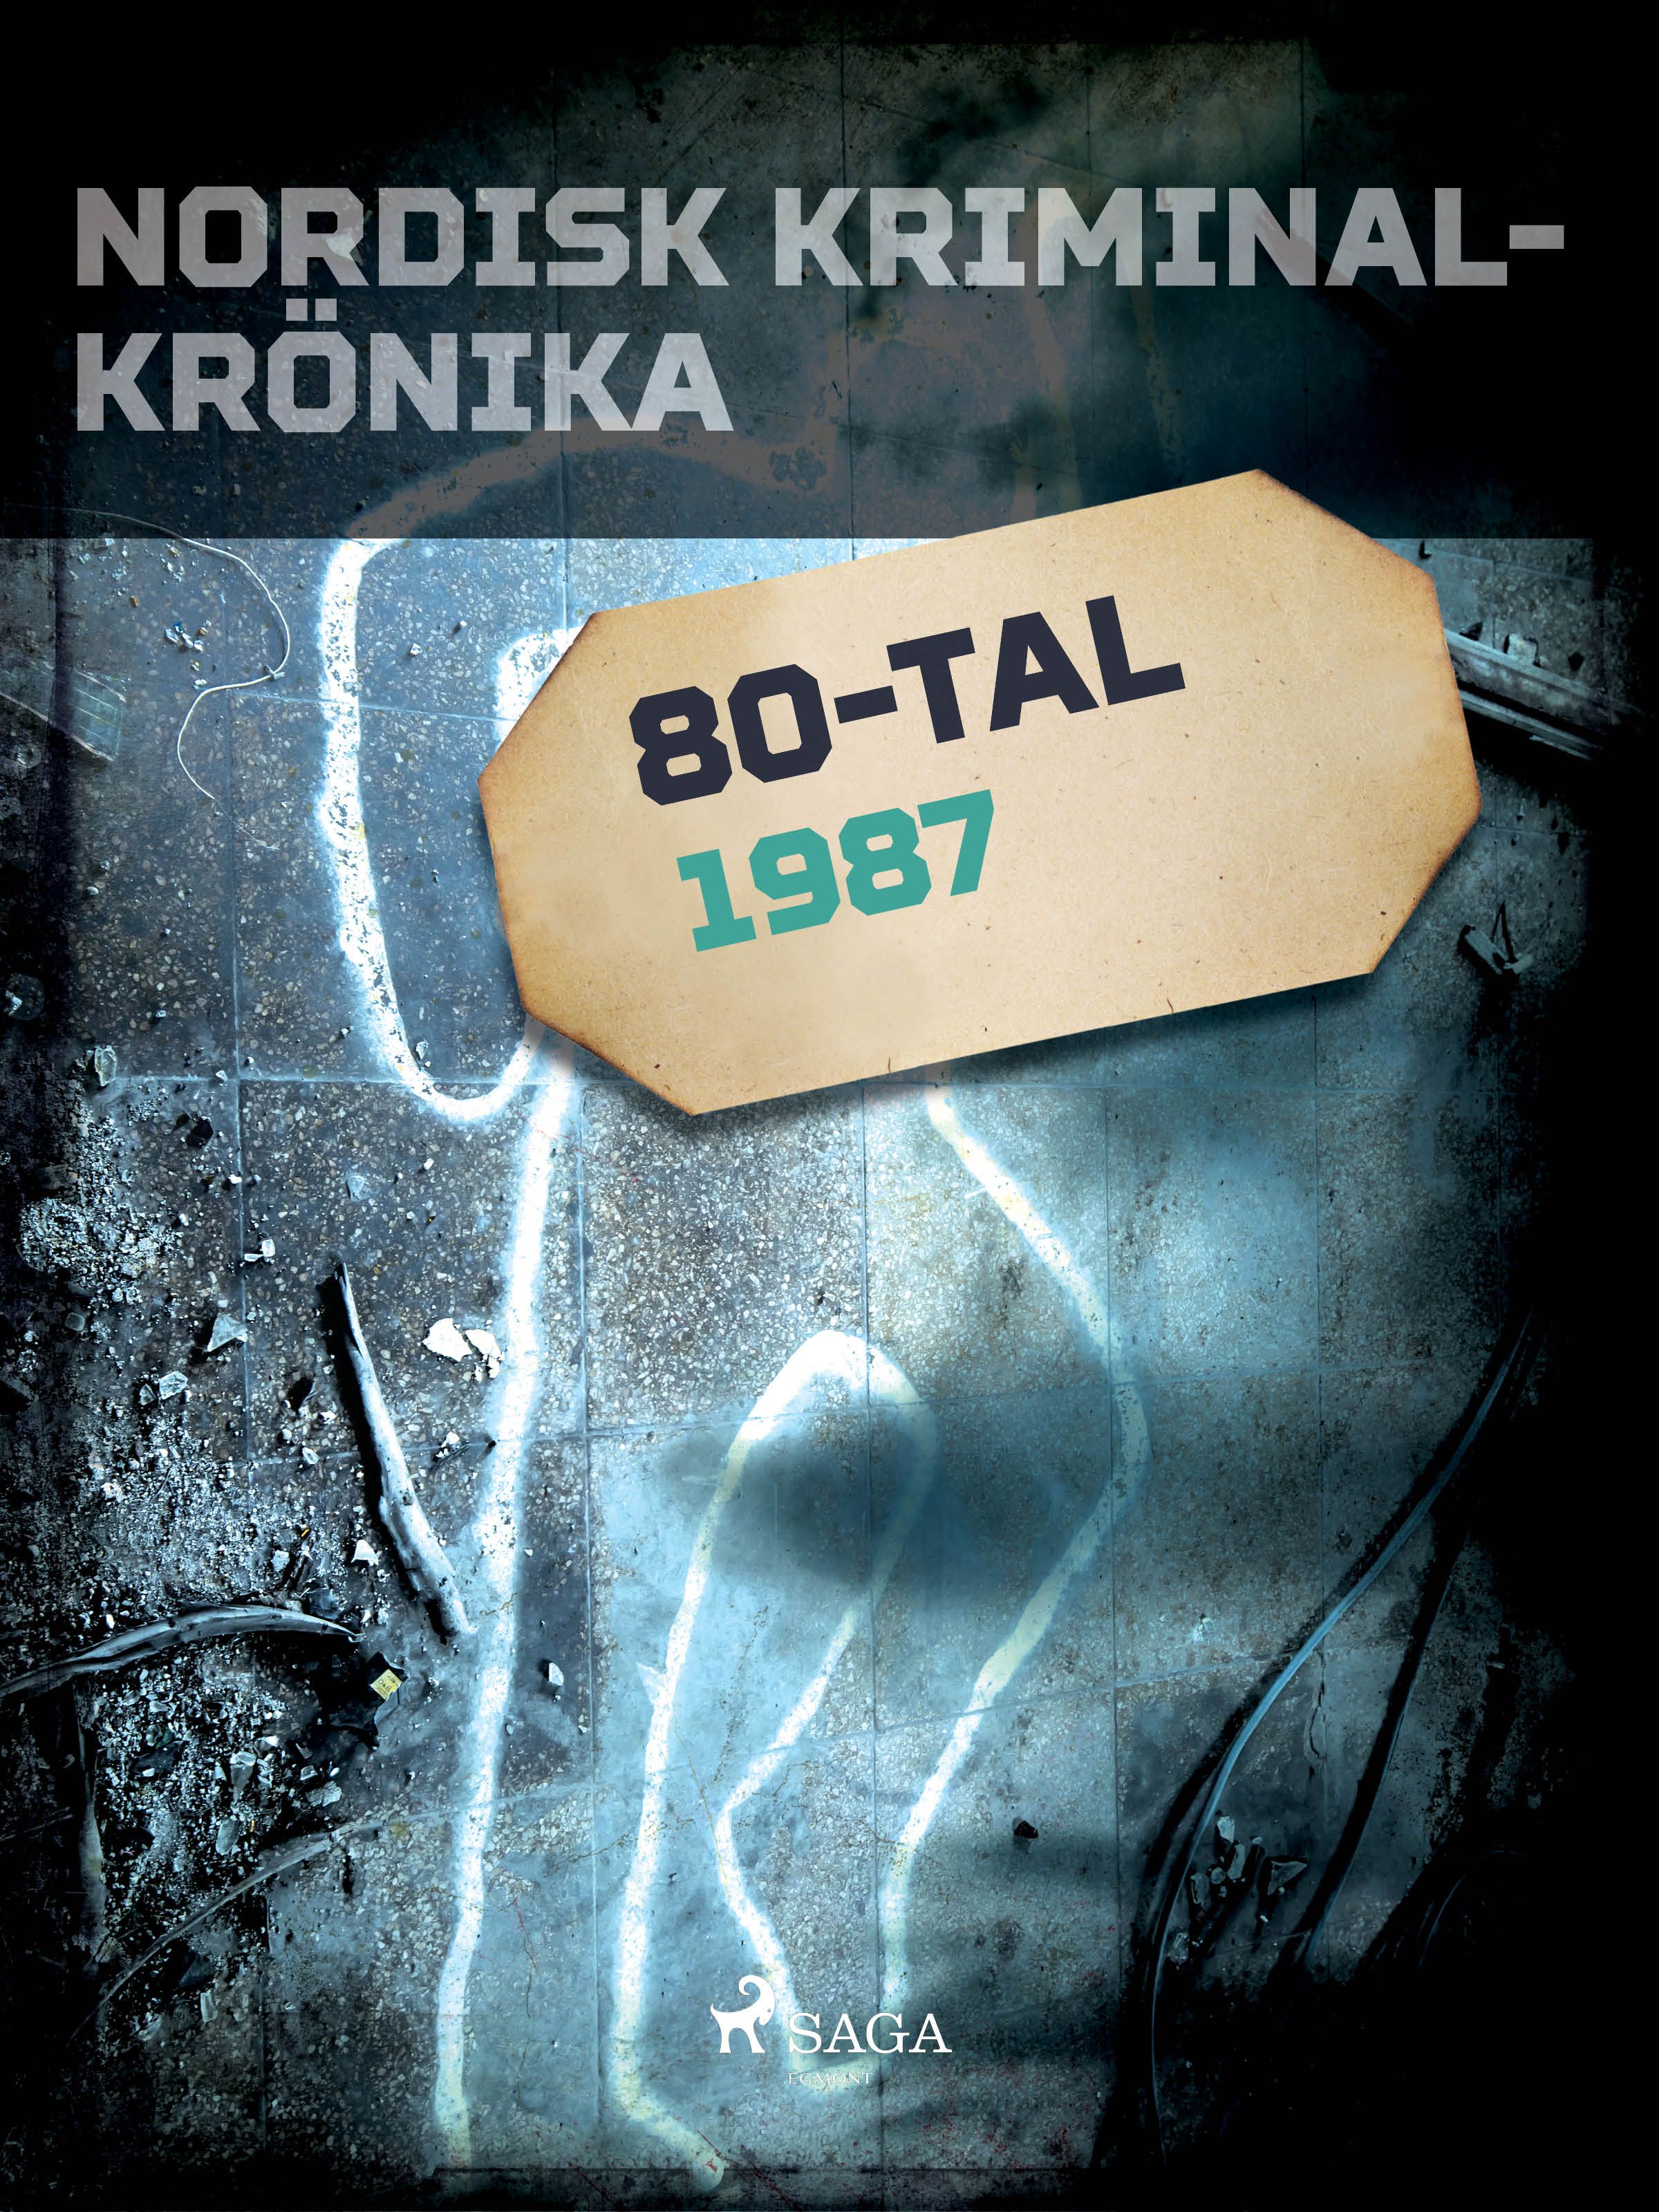 Nordisk kriminalkrönika 1987, e-bog af Diverse